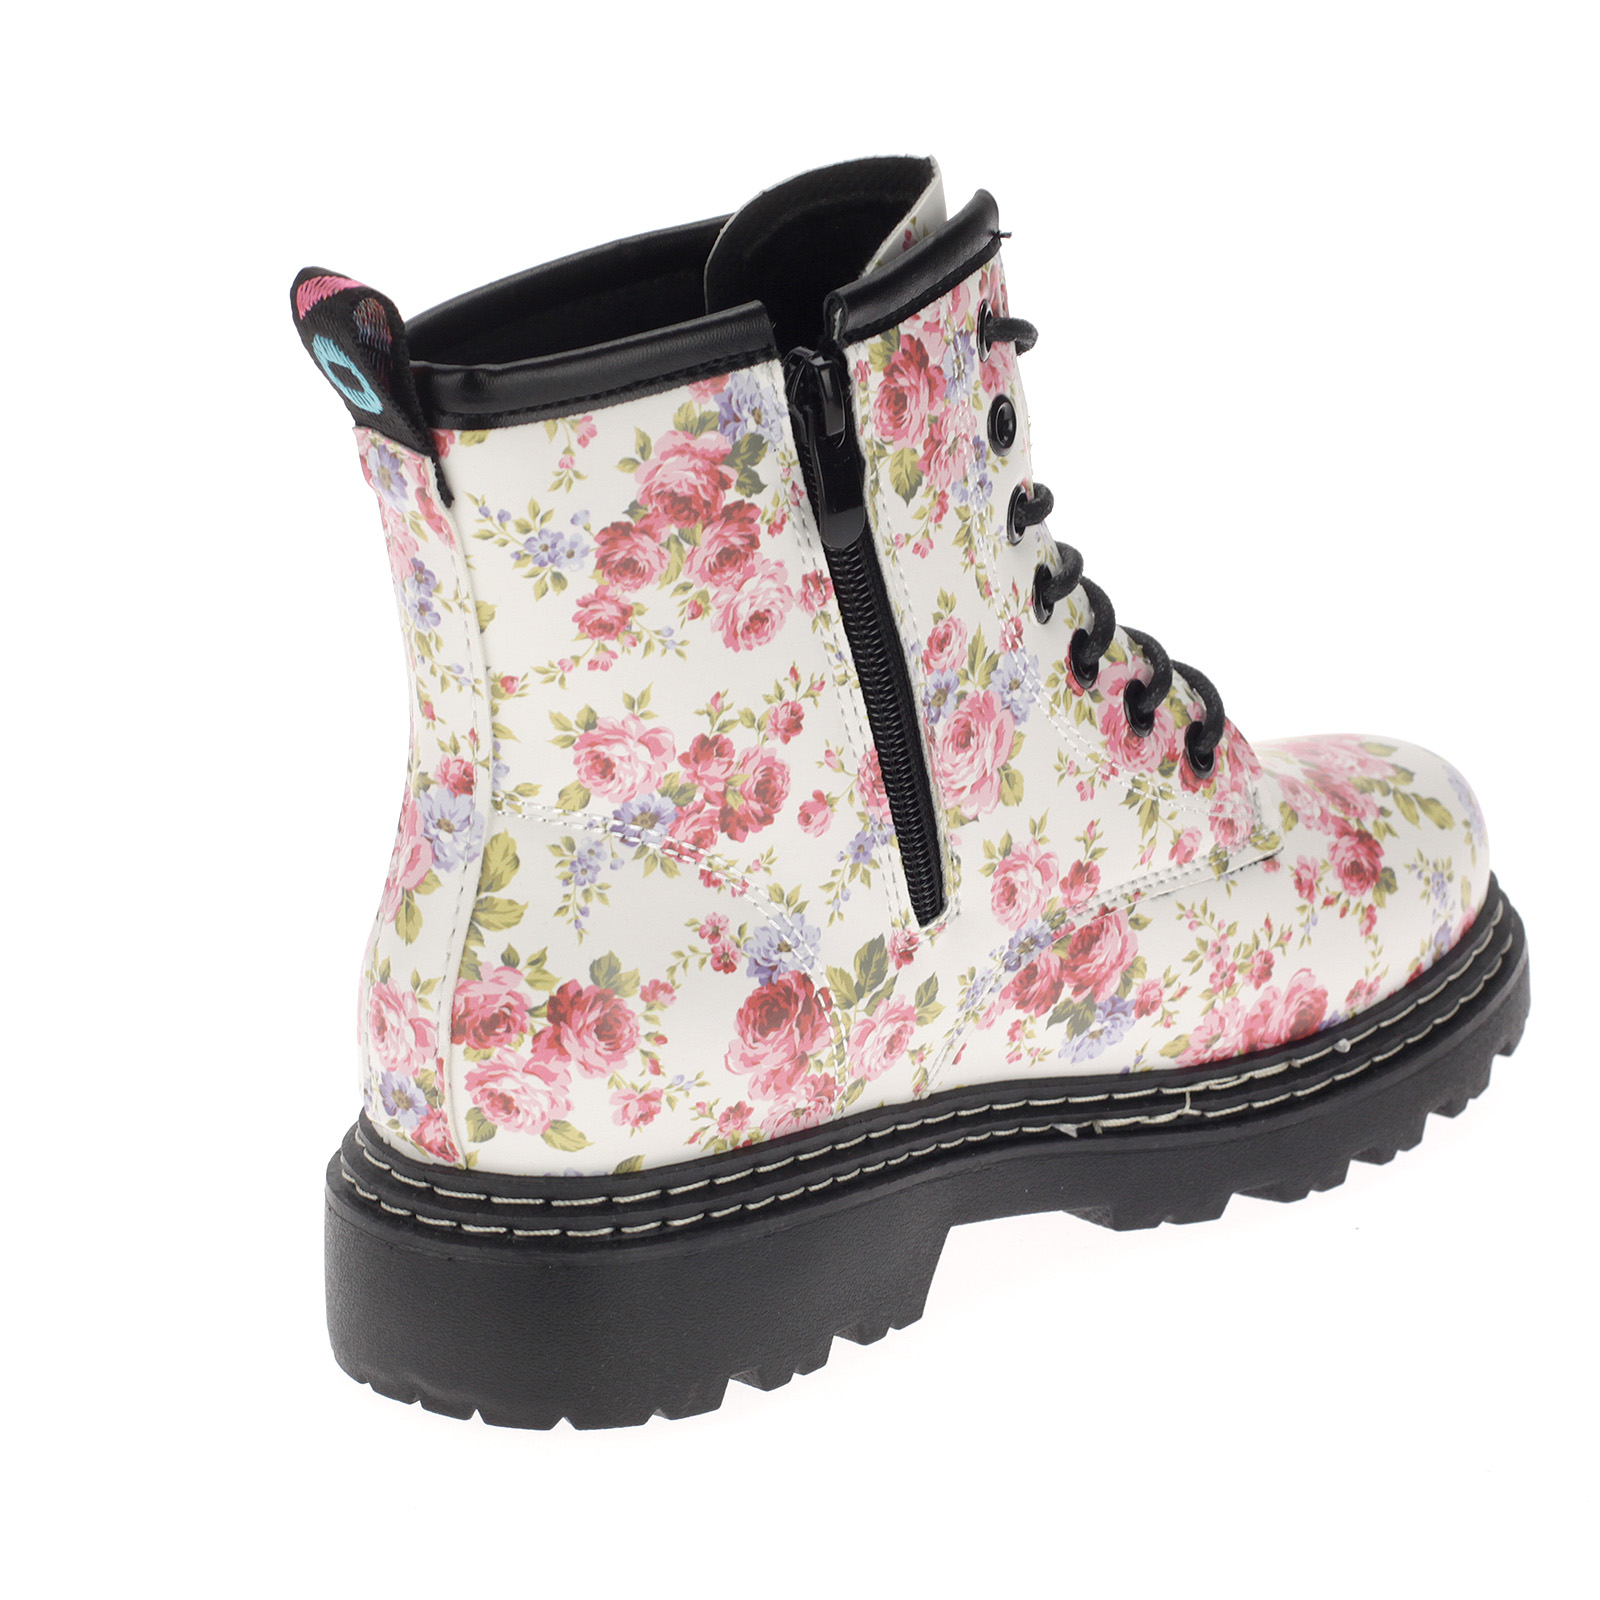 Damen Boots Stiefeletten Stiefel Gefütterte Schuhe Blumen Freizeit 20201 pink